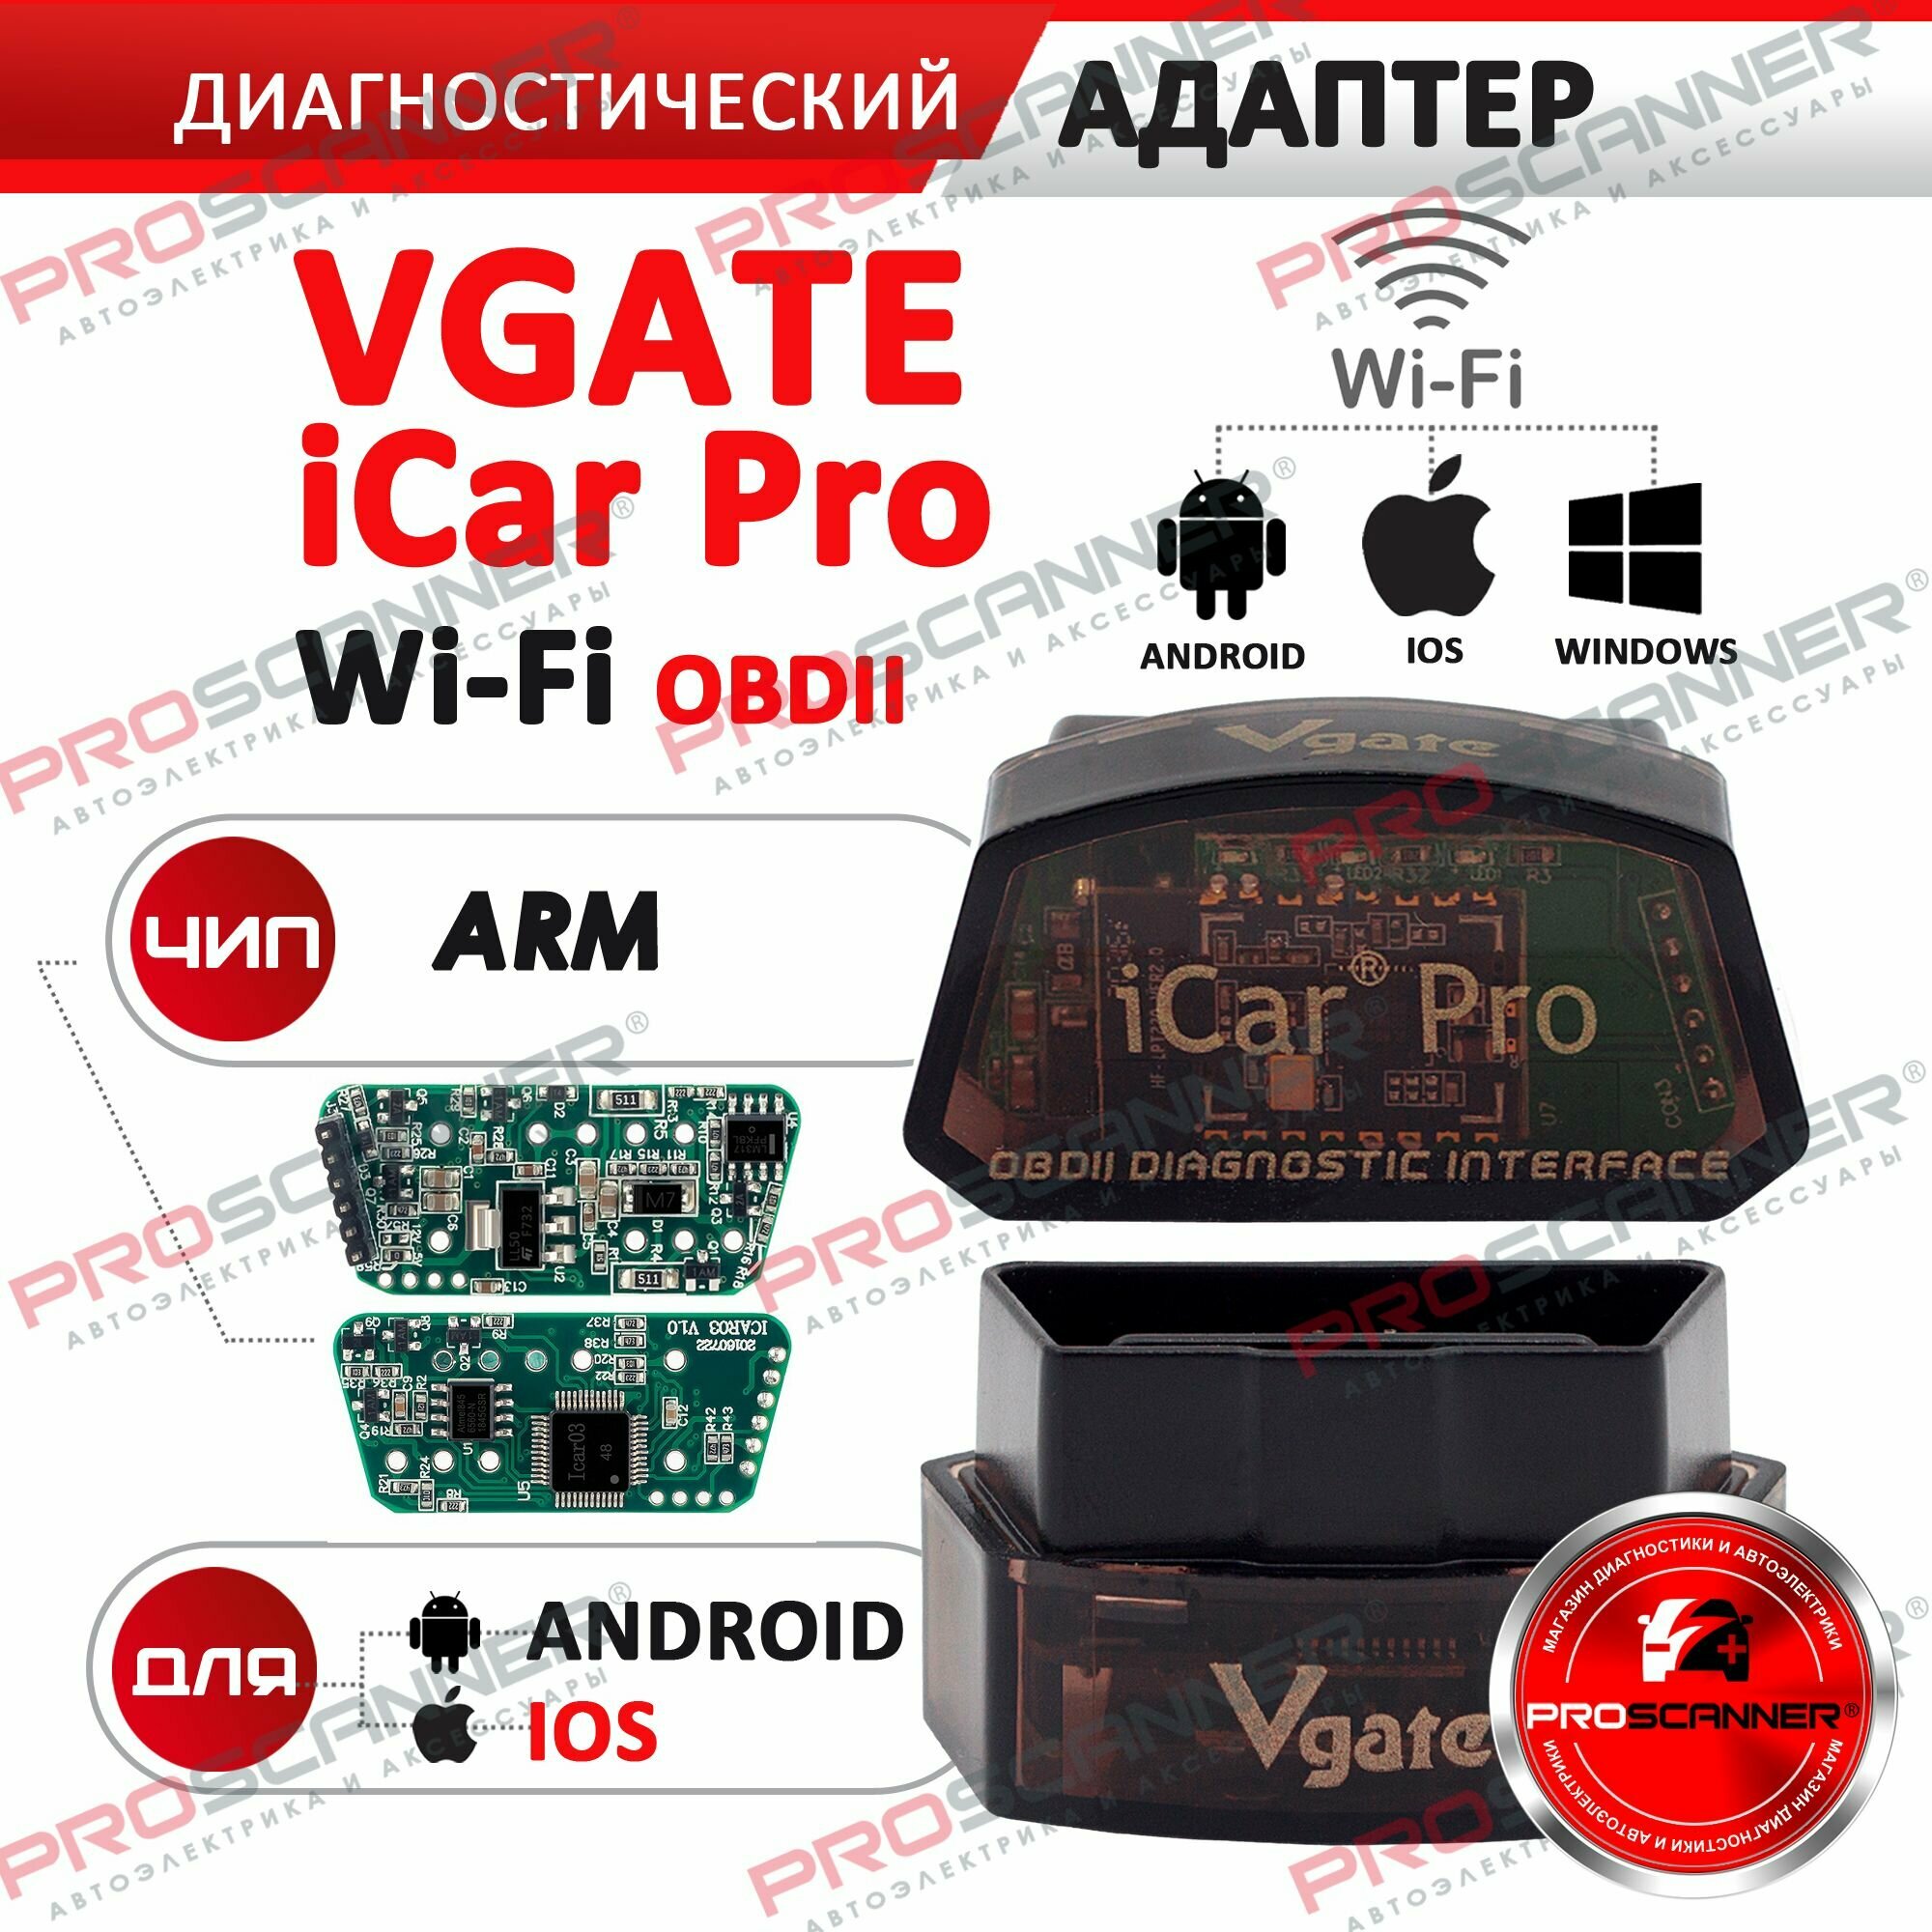 Автосканер Vgate icar Pro Wi-Fi для iPhone и Android / ELM327 адаптер для диагностики автомобиля